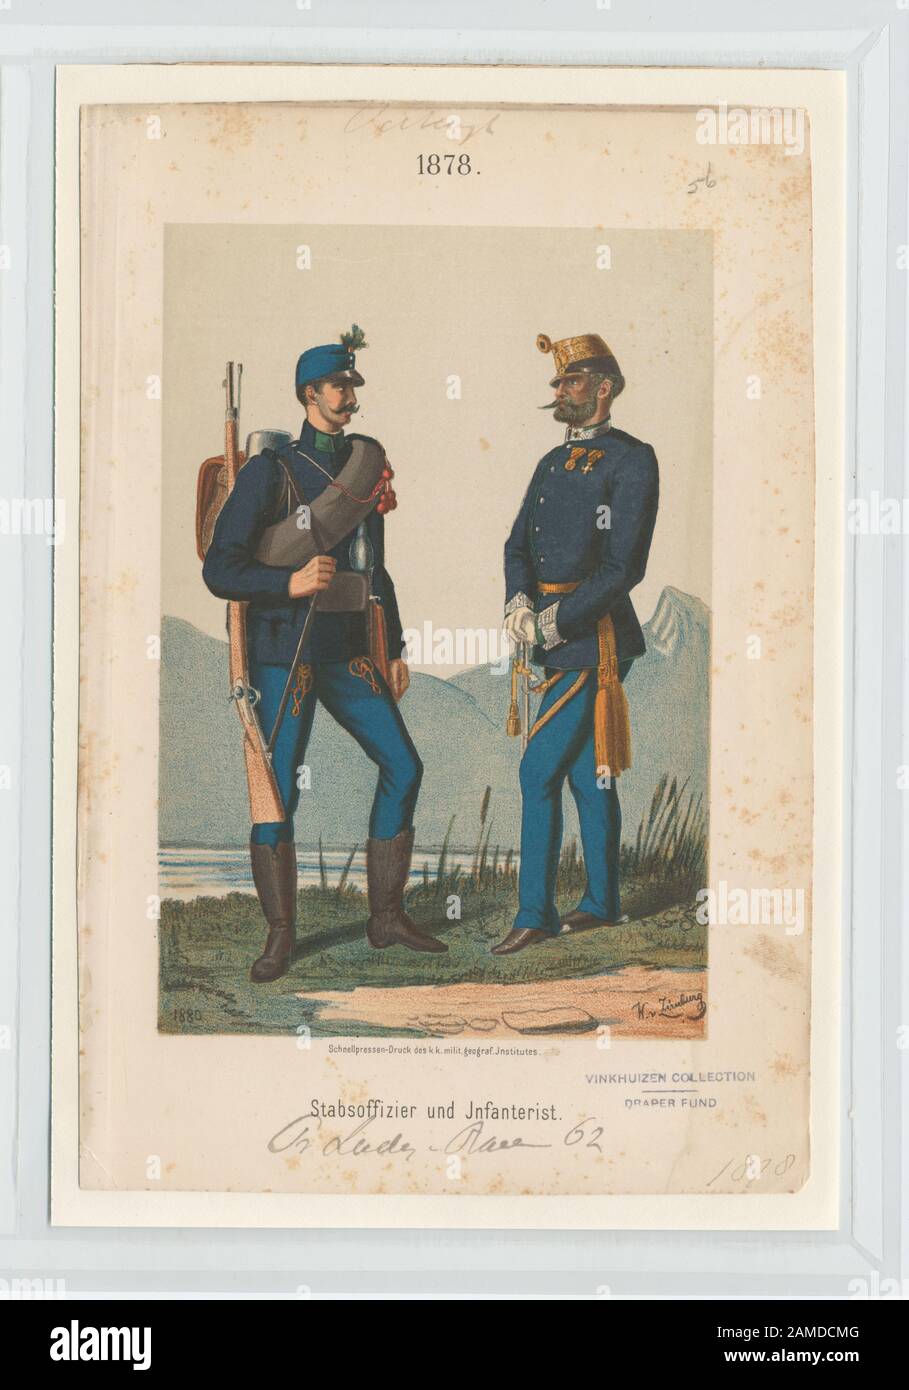 Stabsoffizier und Infanterist (Regt 62)  Ownership : Draper Fund 13.55   4th Hussar Regiment, Edelsheim, 1875, Gyulai   (Zimburg); Stabsoffizier und Infanterist. [Regt. 62] Stock Photo